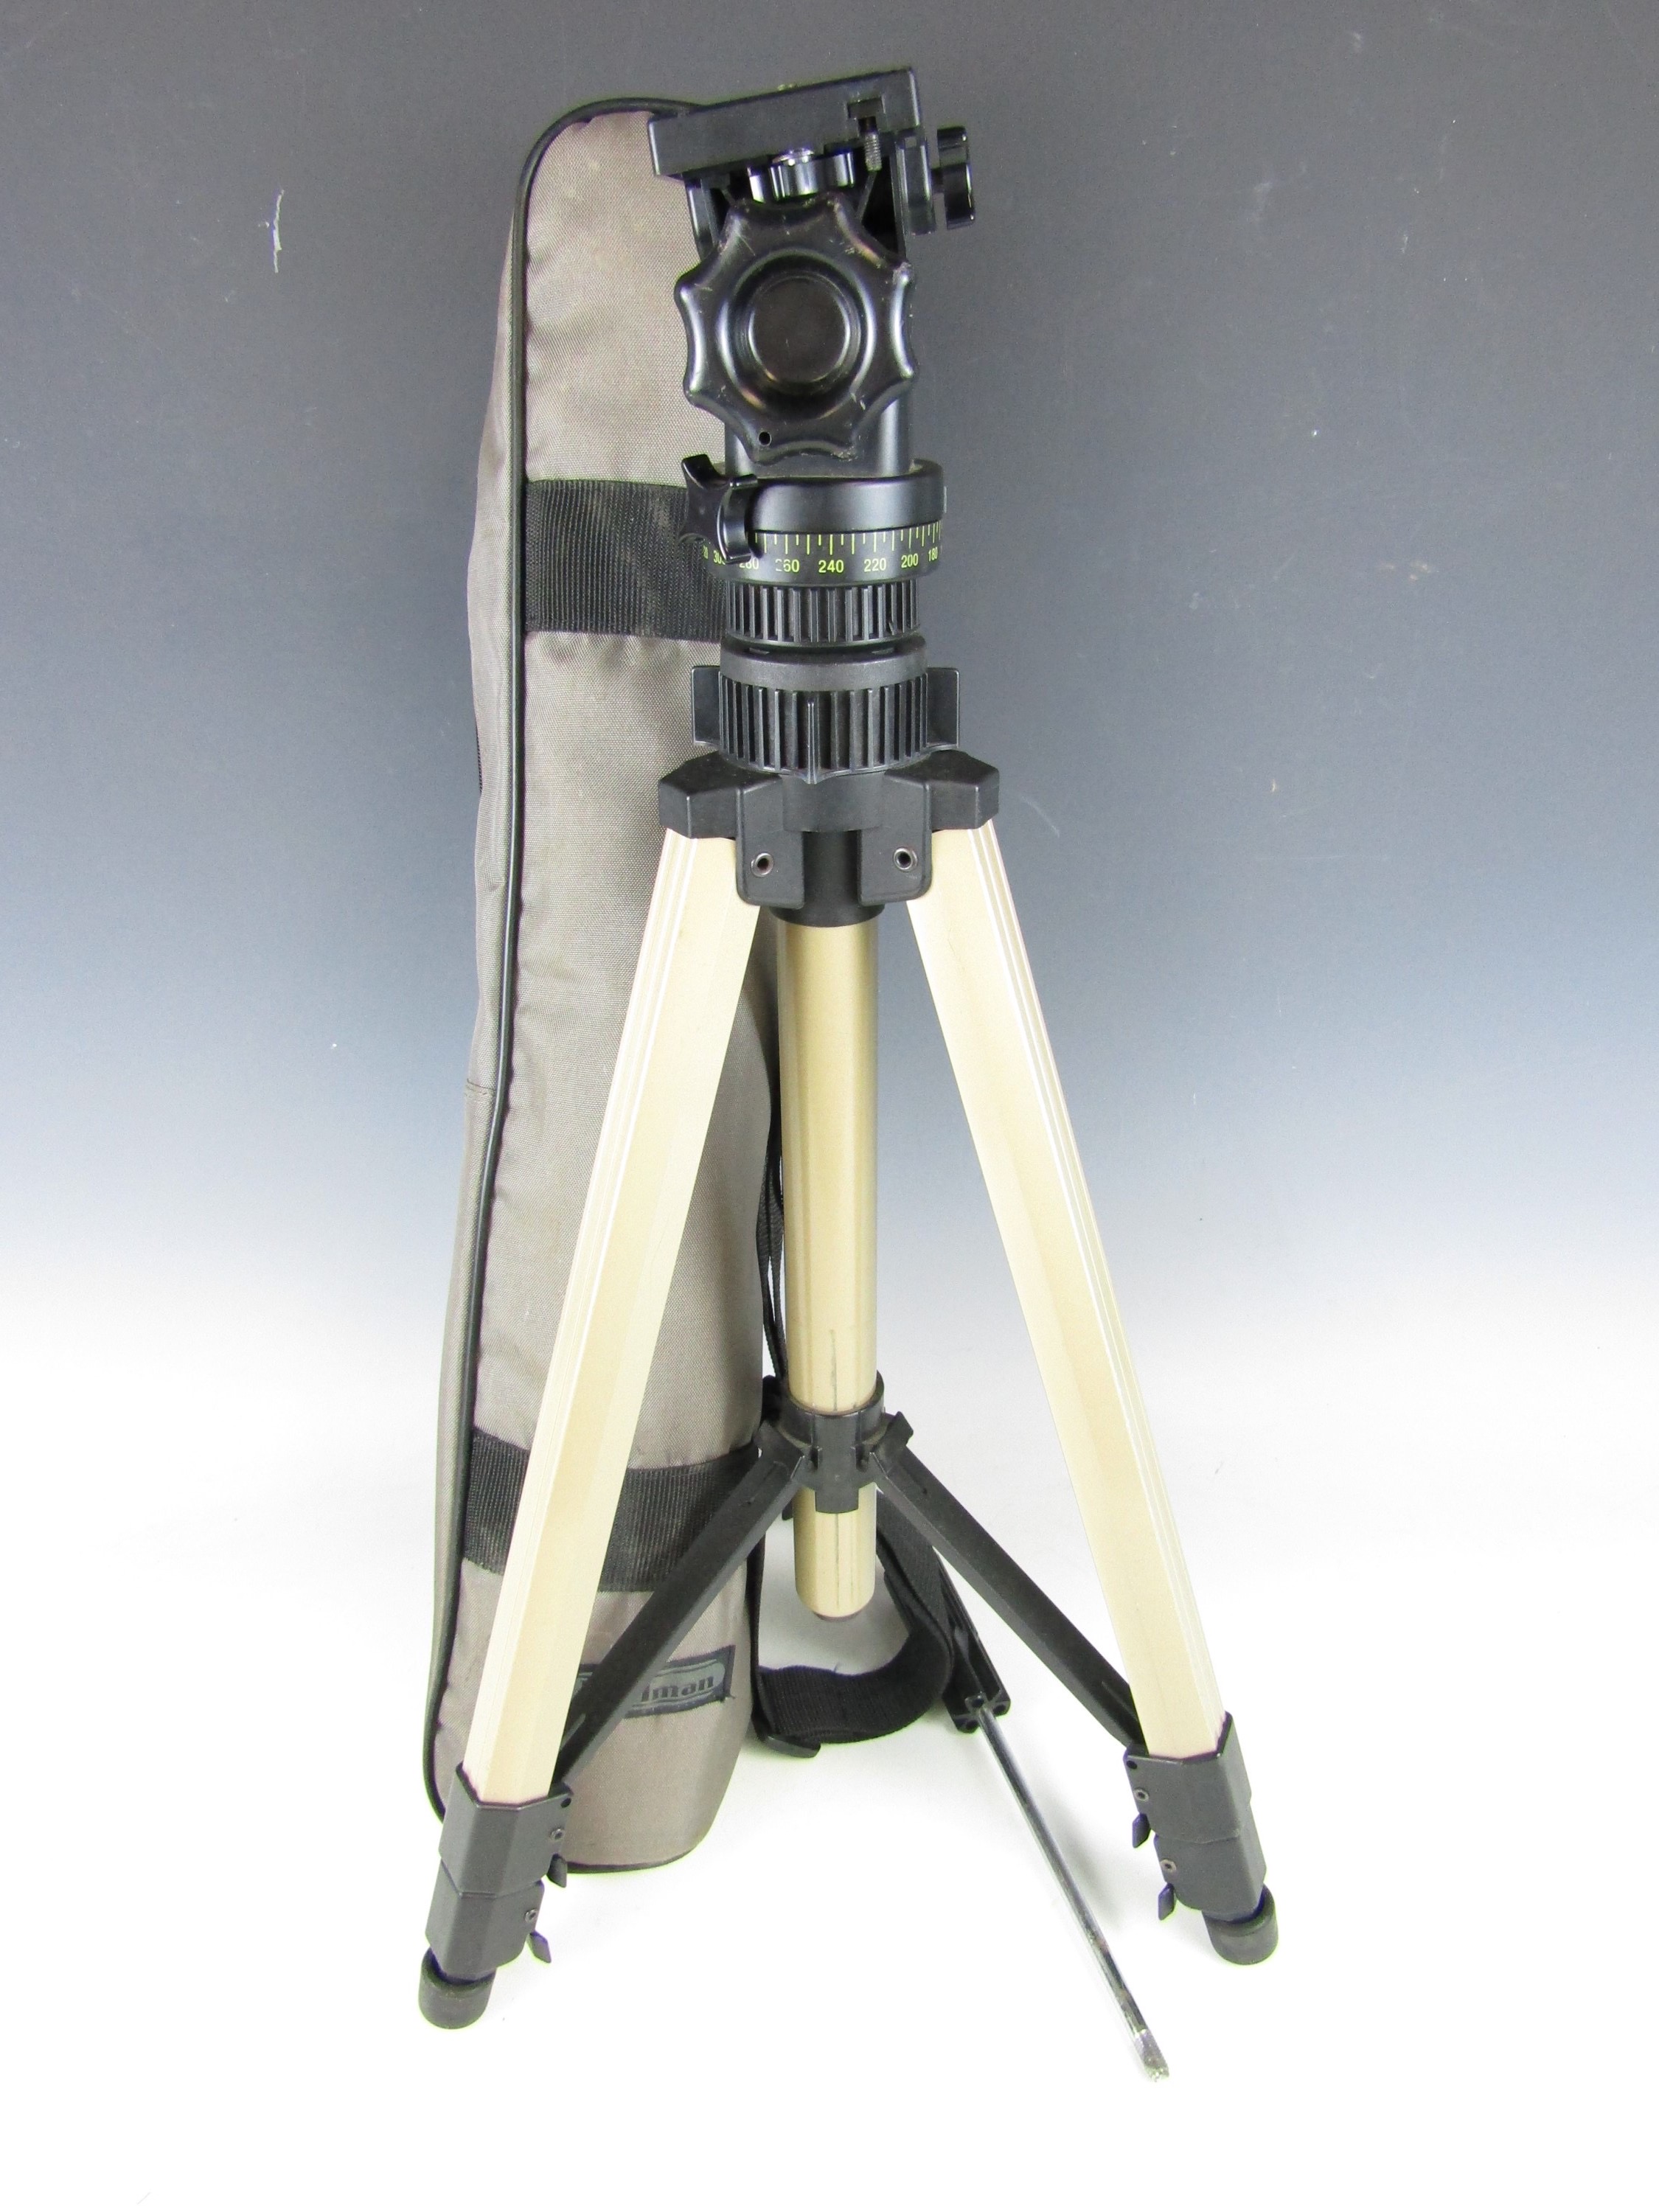 A cased Pullman Bicora camera tripod